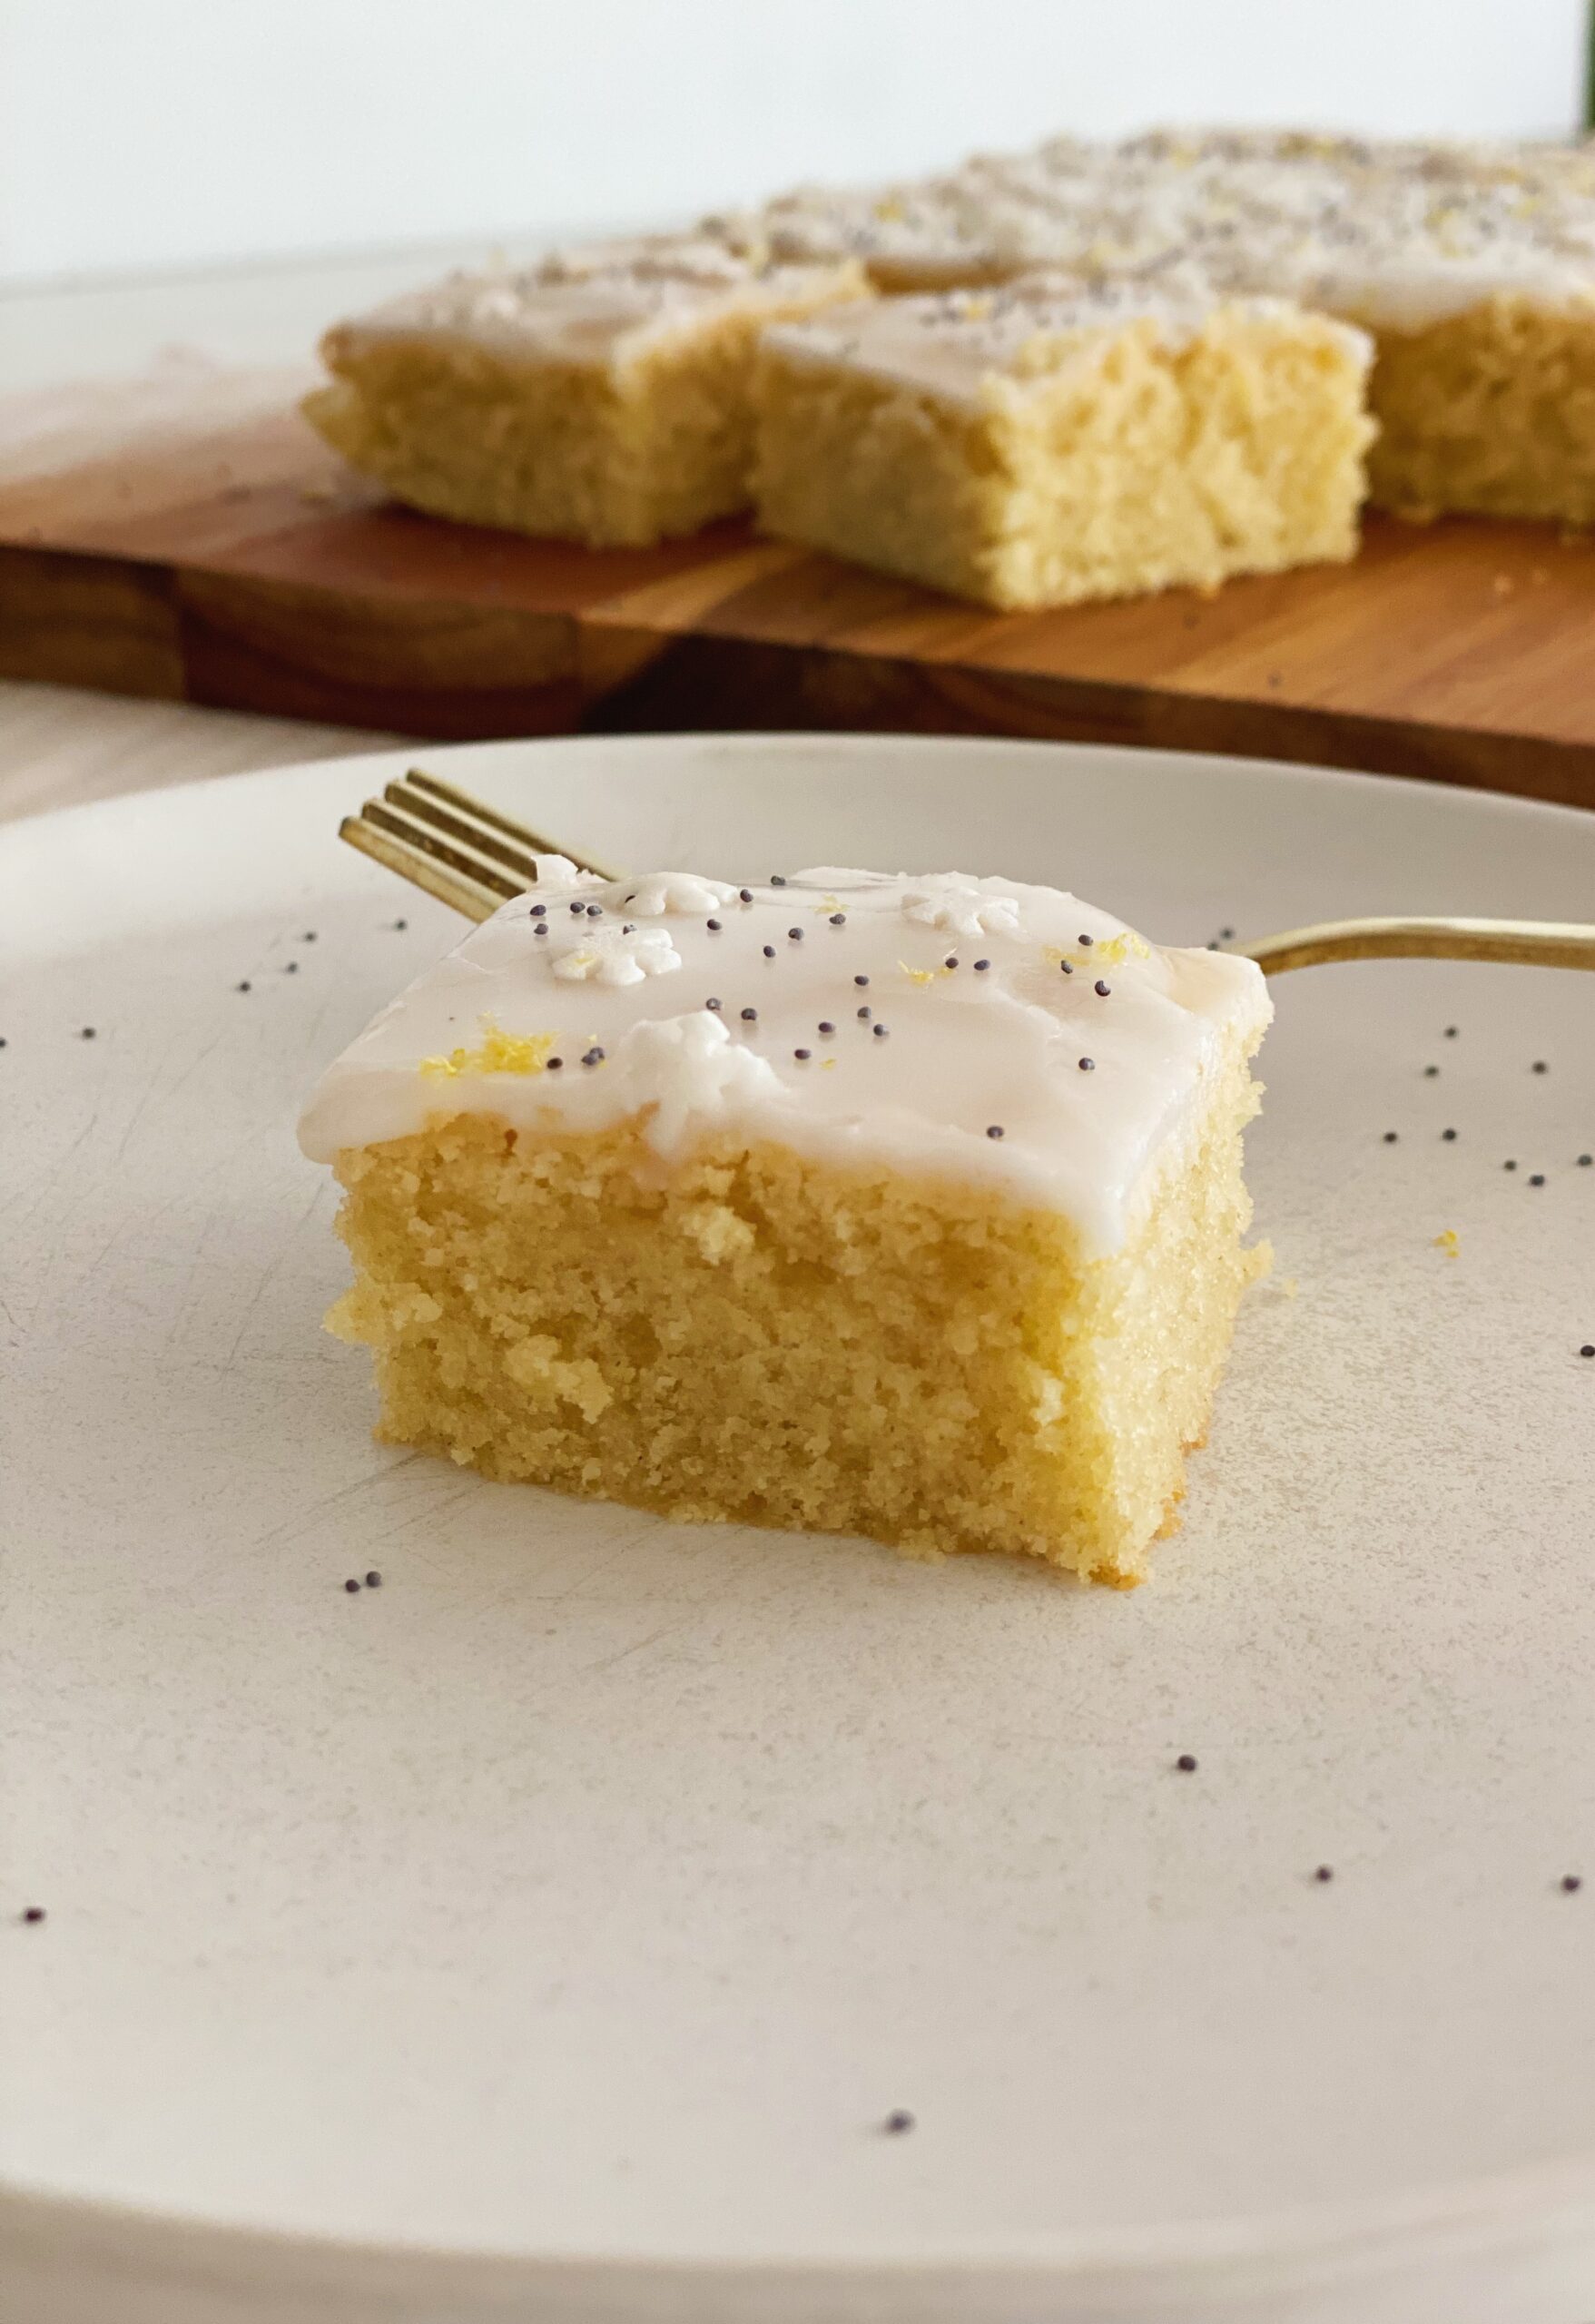 Et stykke citronkage på en hvid tallerken med en guld gaffel. I baggrunden er der et spækbræt med mere kage på.